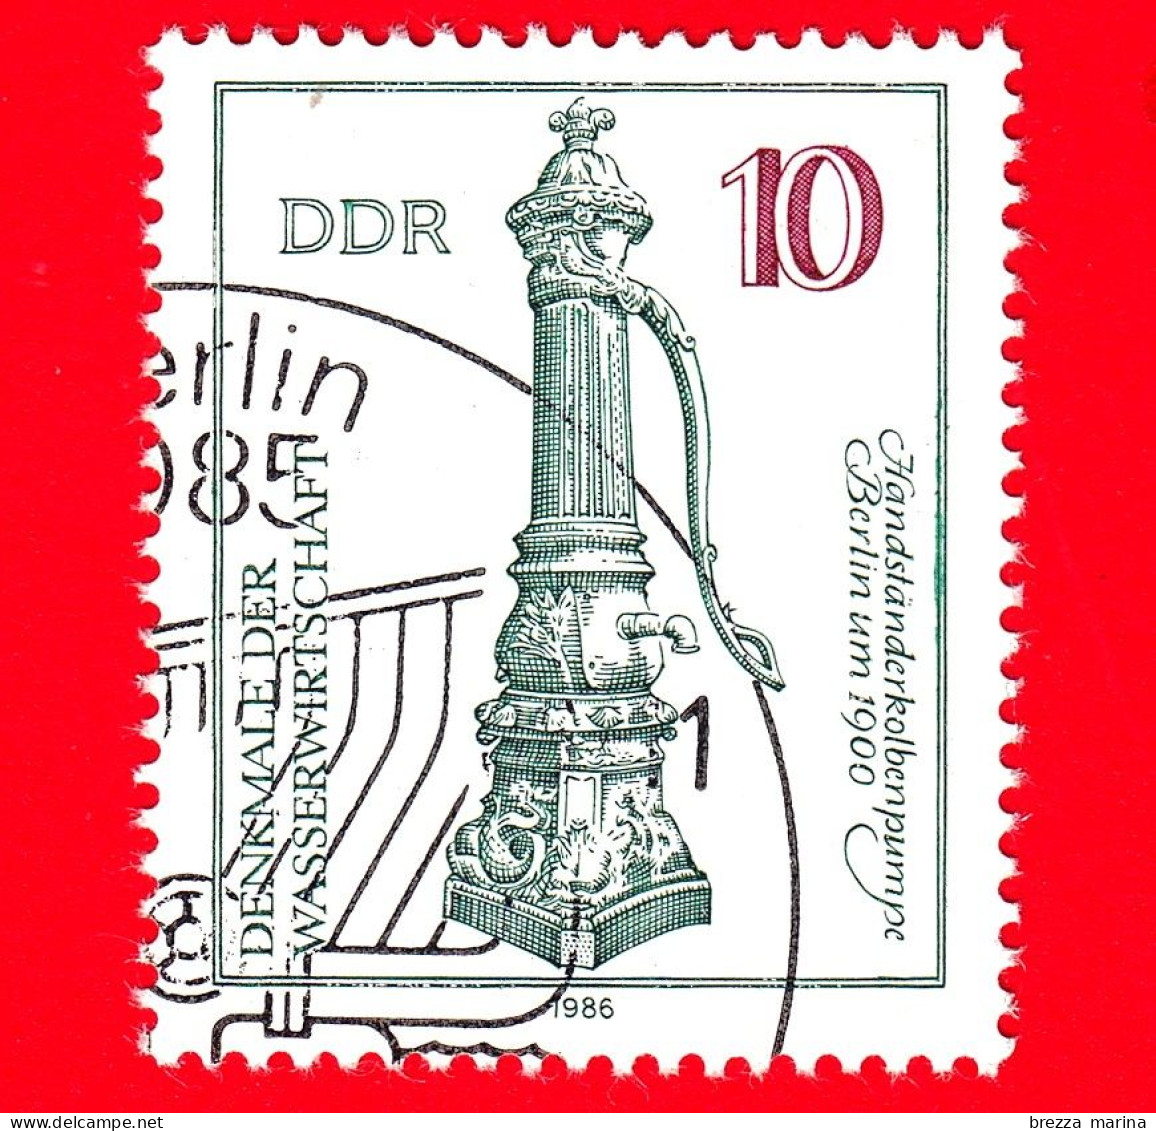 GERMANIA - DDR - Usato - 1986 - Tecnologia Dell'acqua - Pompa A Mano, Berlino (1900) - 50 - Usati